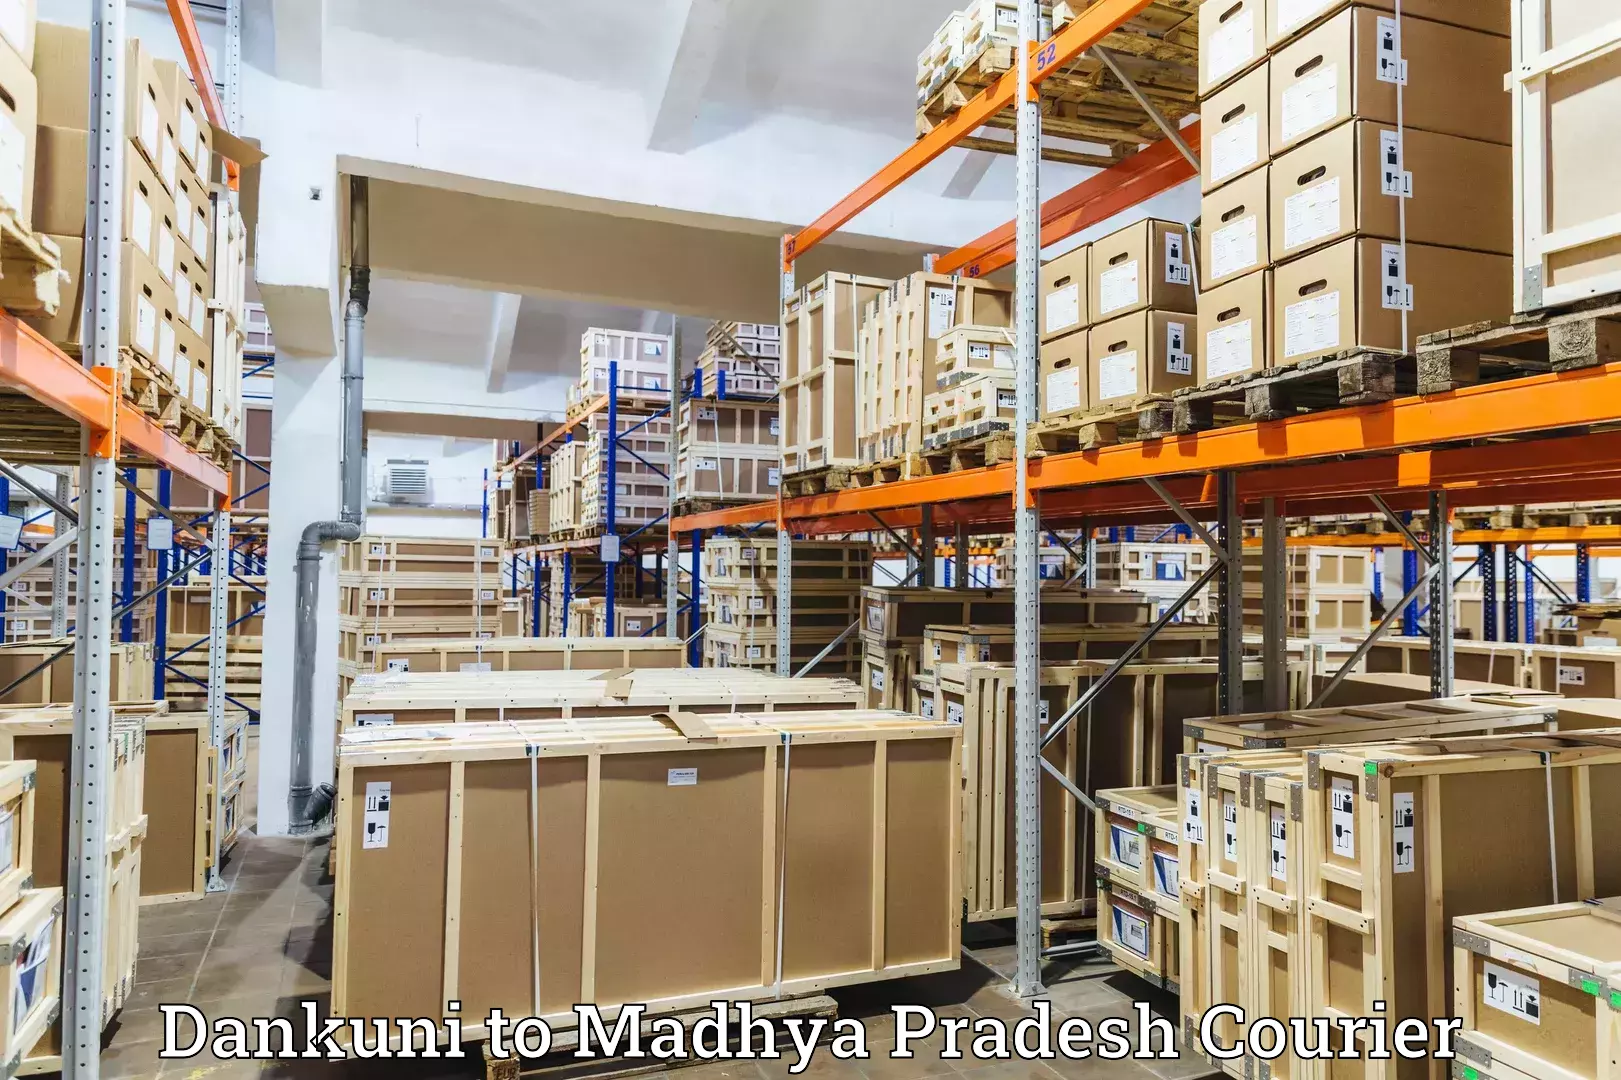 Parcel service for businesses in Dankuni to Madhya Pradesh